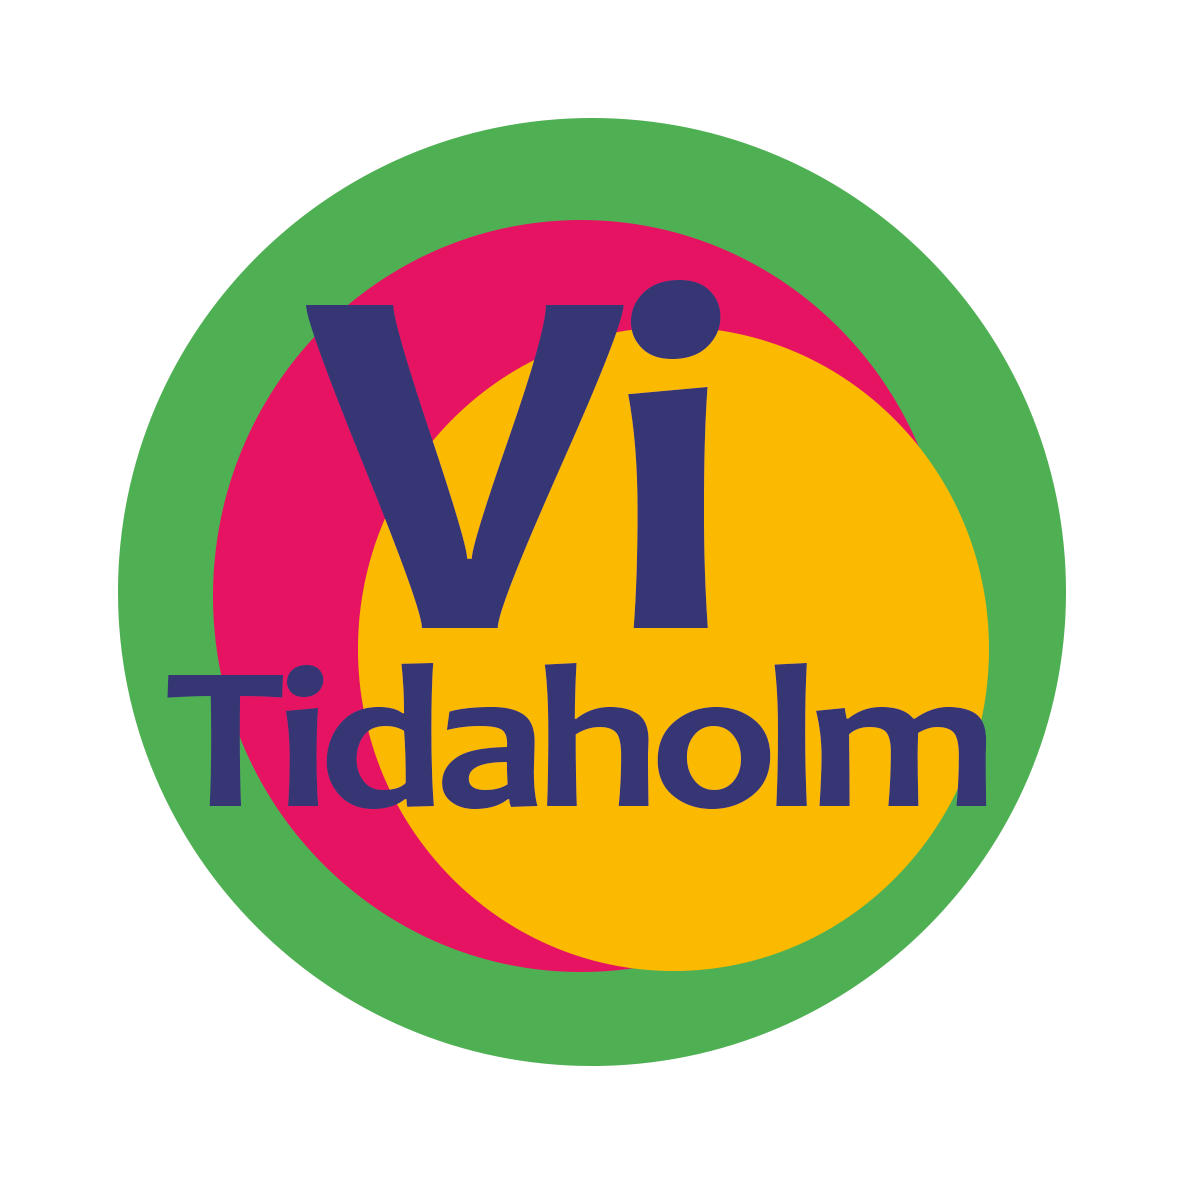 Vi Tidaholm